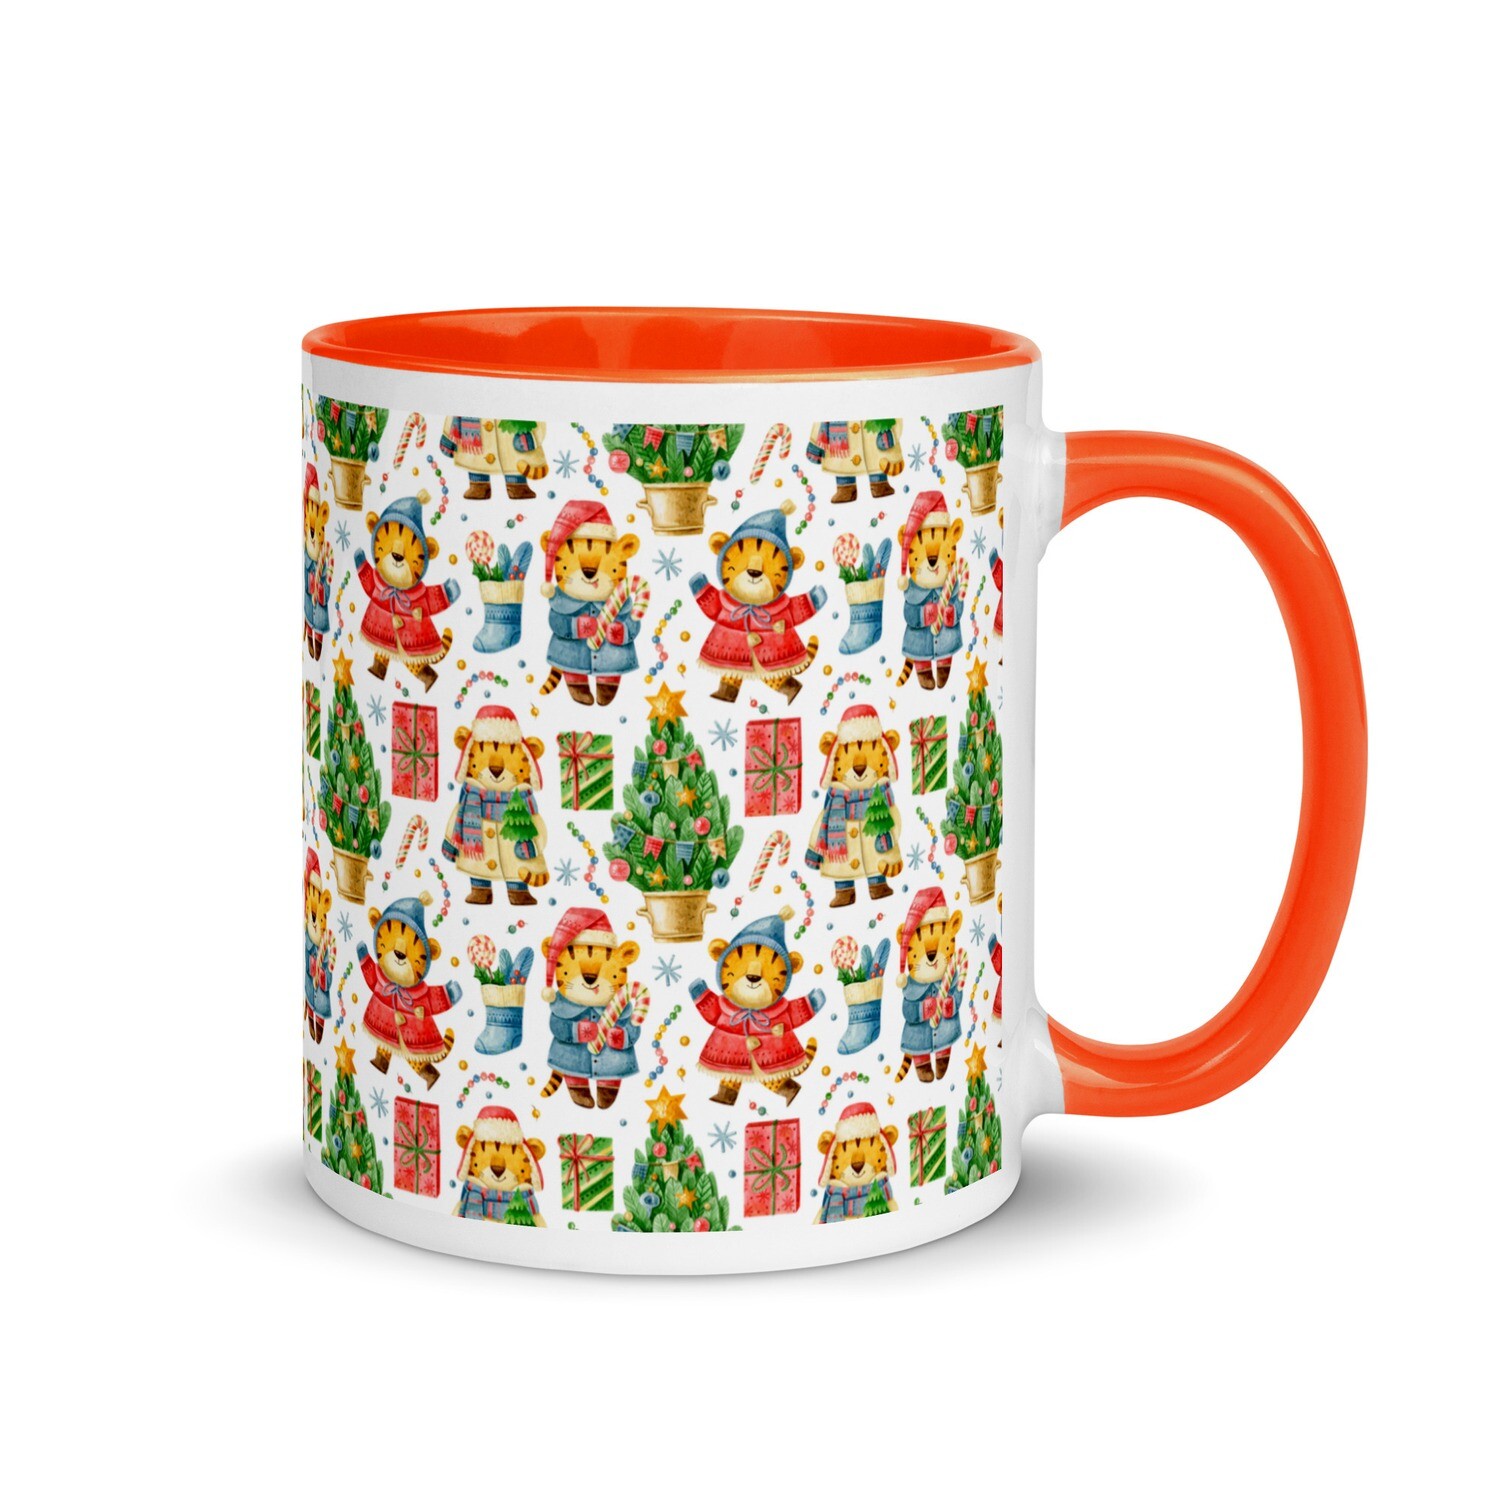 Festive mug - Design No. 3